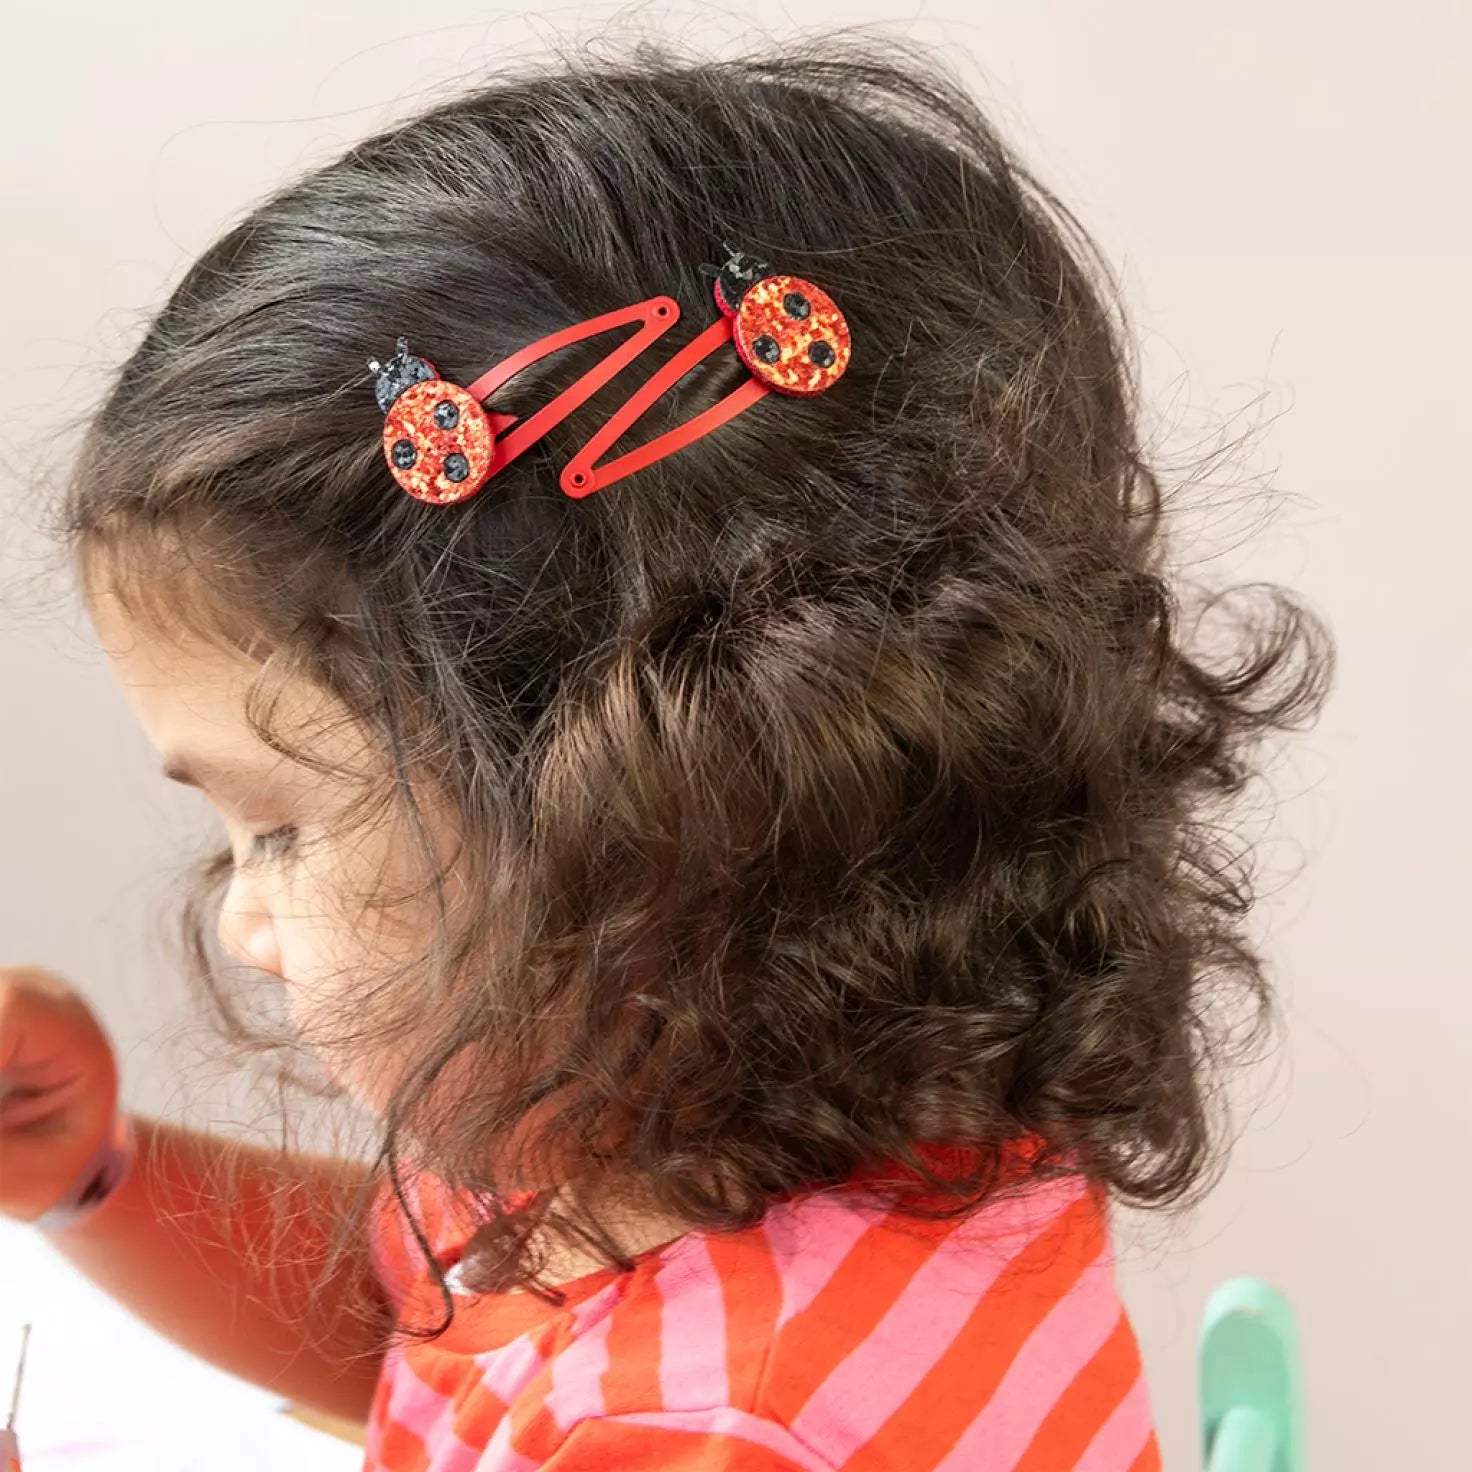 Glitter hair clips (set of 2) - Ladybird